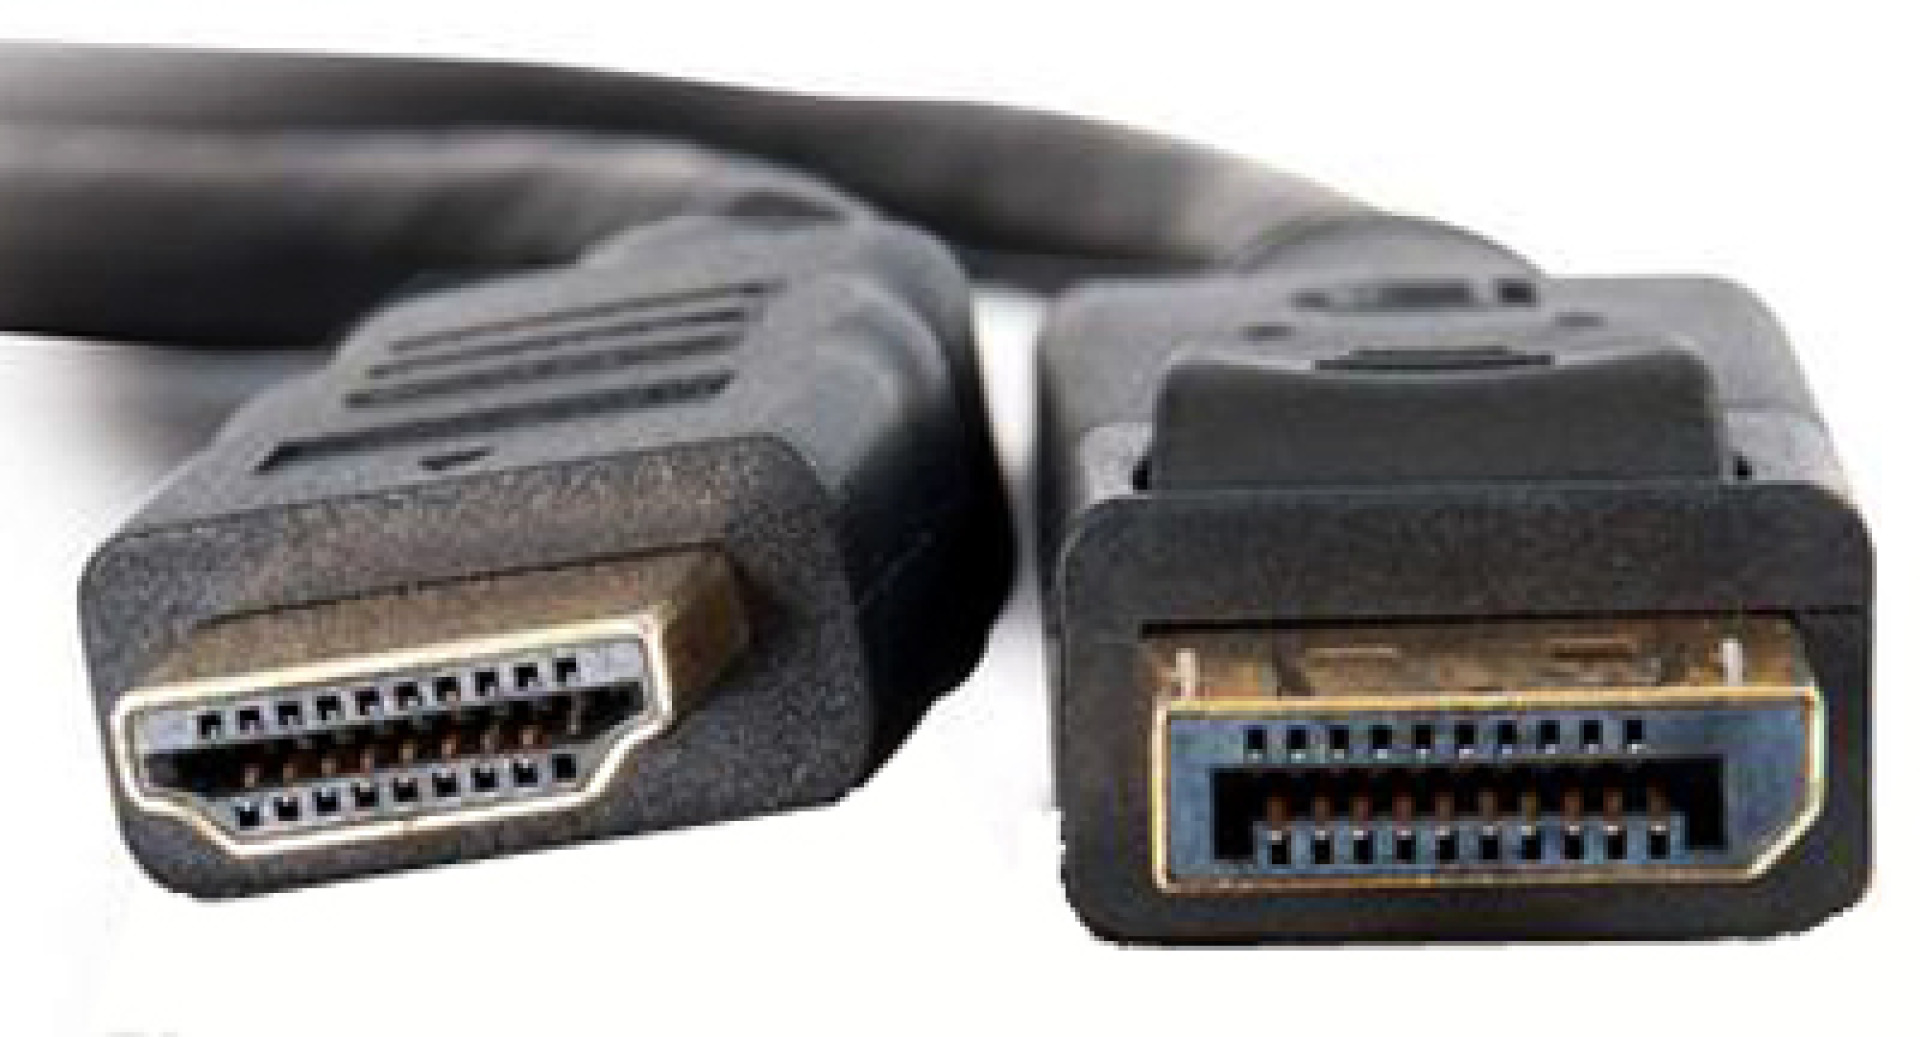 Konverterkabel DisplayPort 1.1 auf HDMI, schwarz, 3 m